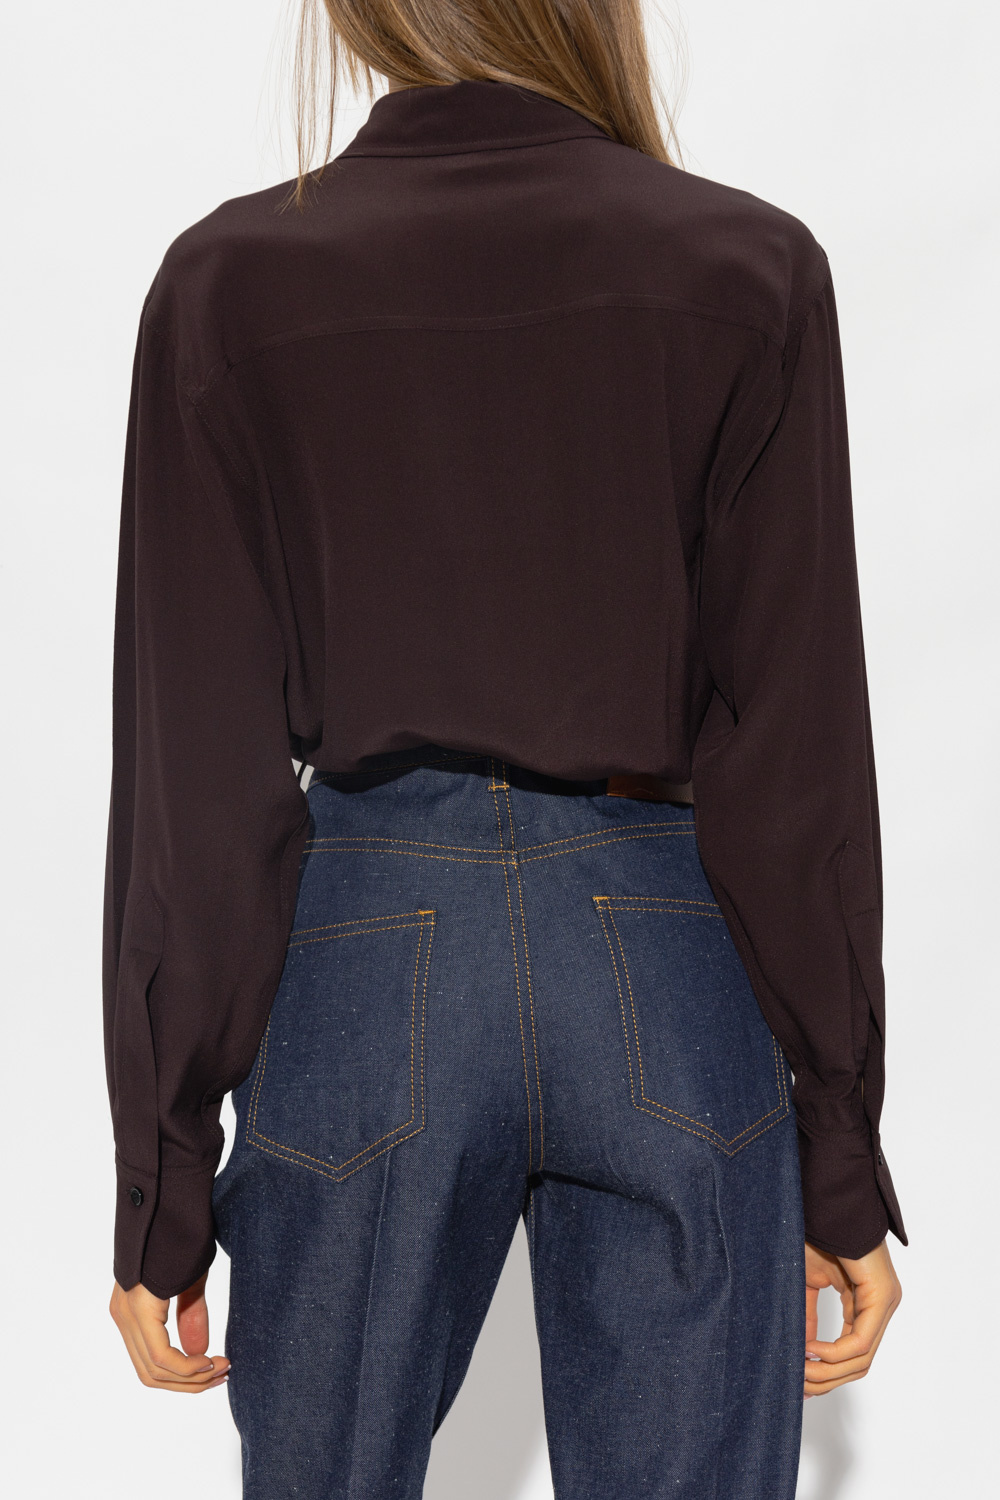 Victoria Beckham Silk Women shirt with pockets